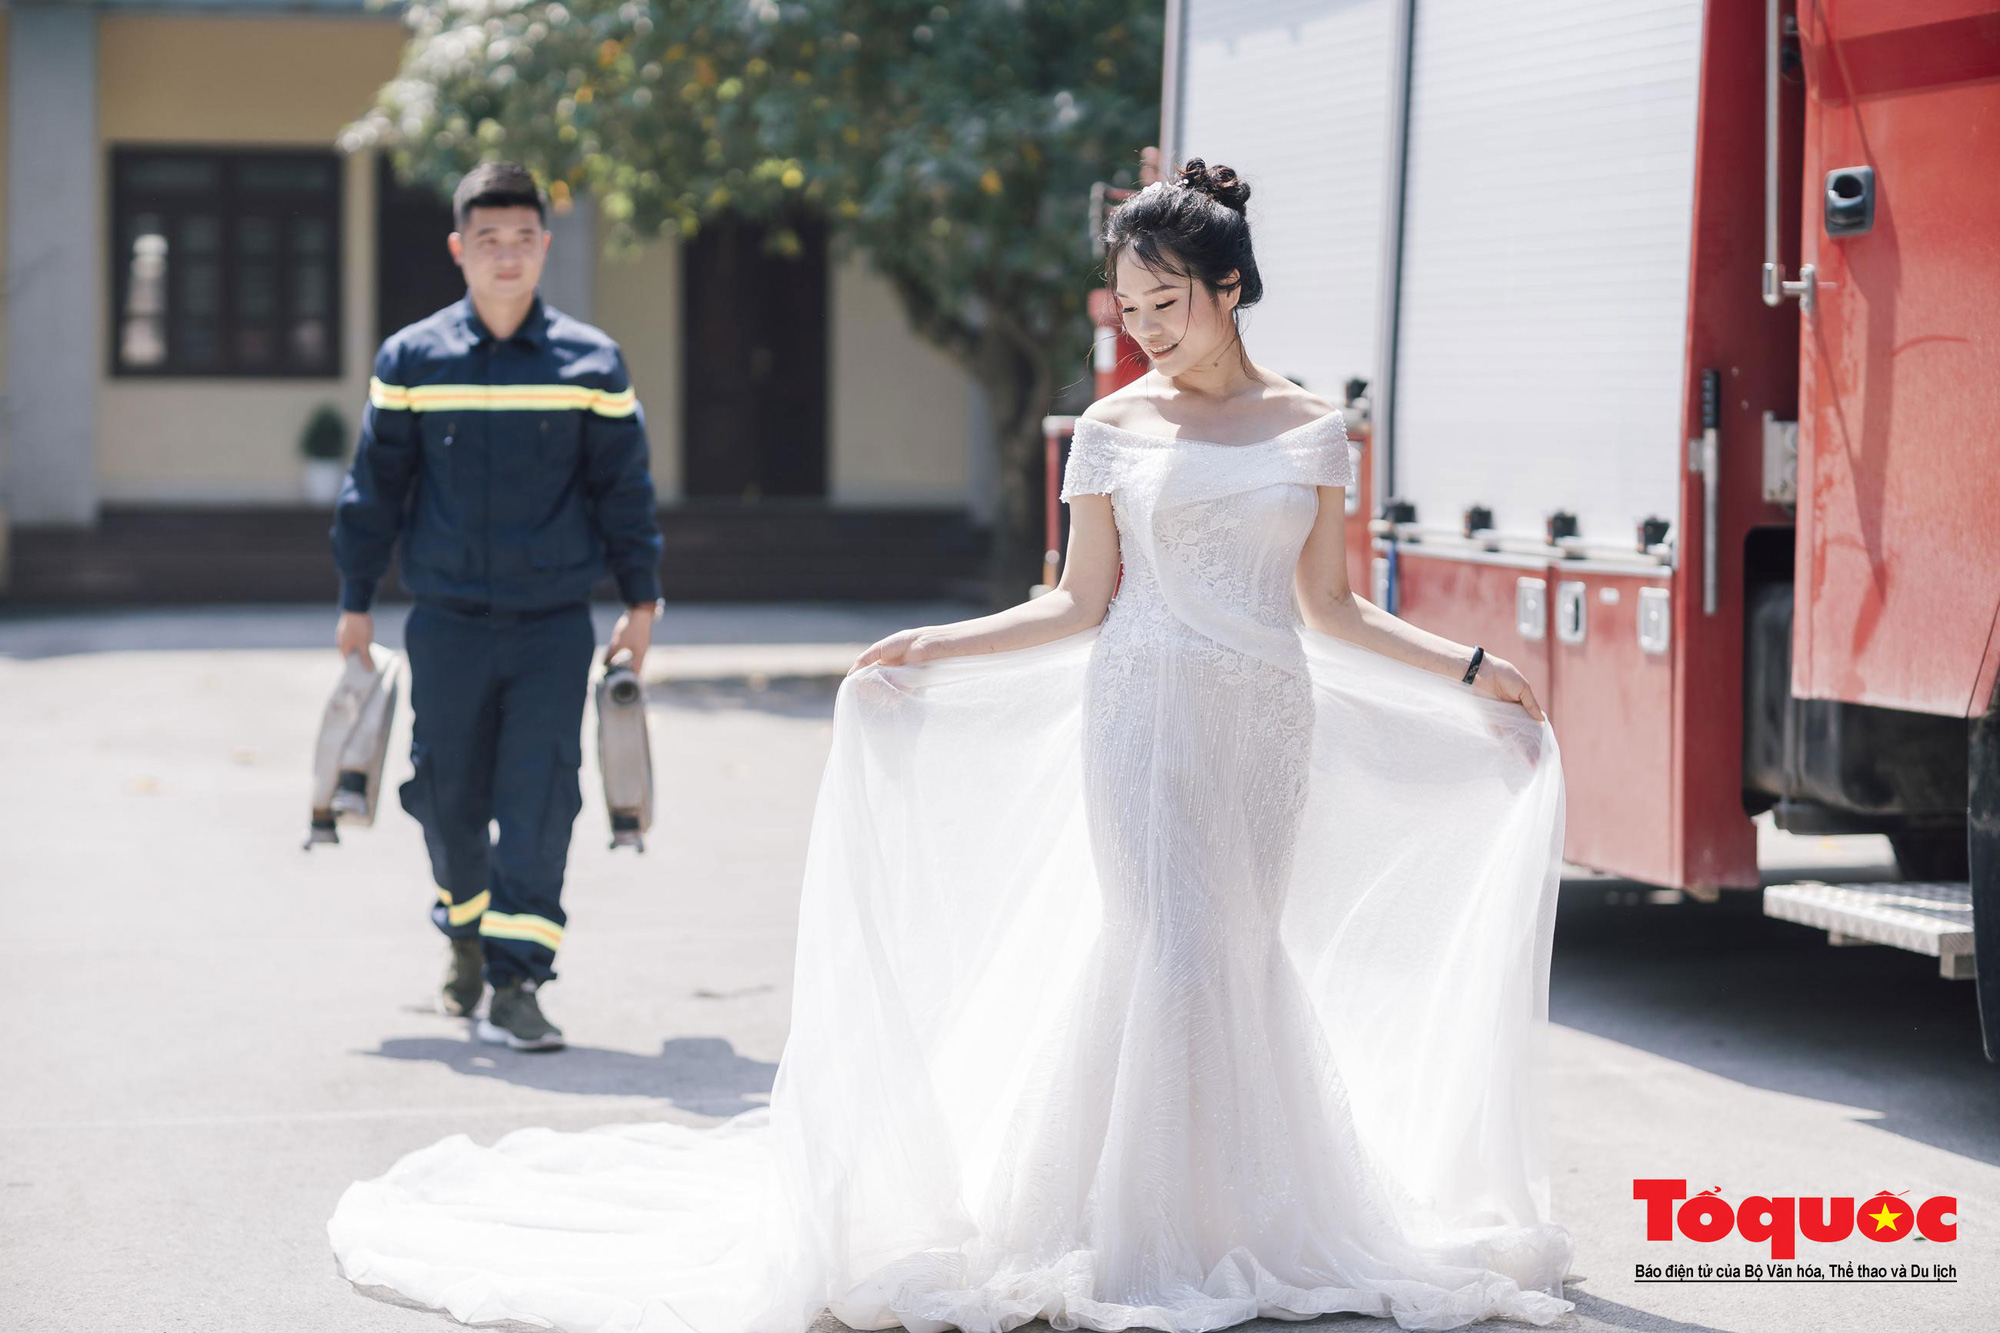 Chàng lính cứu hỏa với nụ cười tươi tắn và lớp trang phục bảo hộ, cùng cô dâu trong bộ váy trắng lộng lẫy sẽ được ghi lại bằng những bức hình đẹp nhất trong bộ ảnh cưới. Hãy xem để tận hưởng cảm giác lãng mạn và hạnh phúc của hai người trẻ.